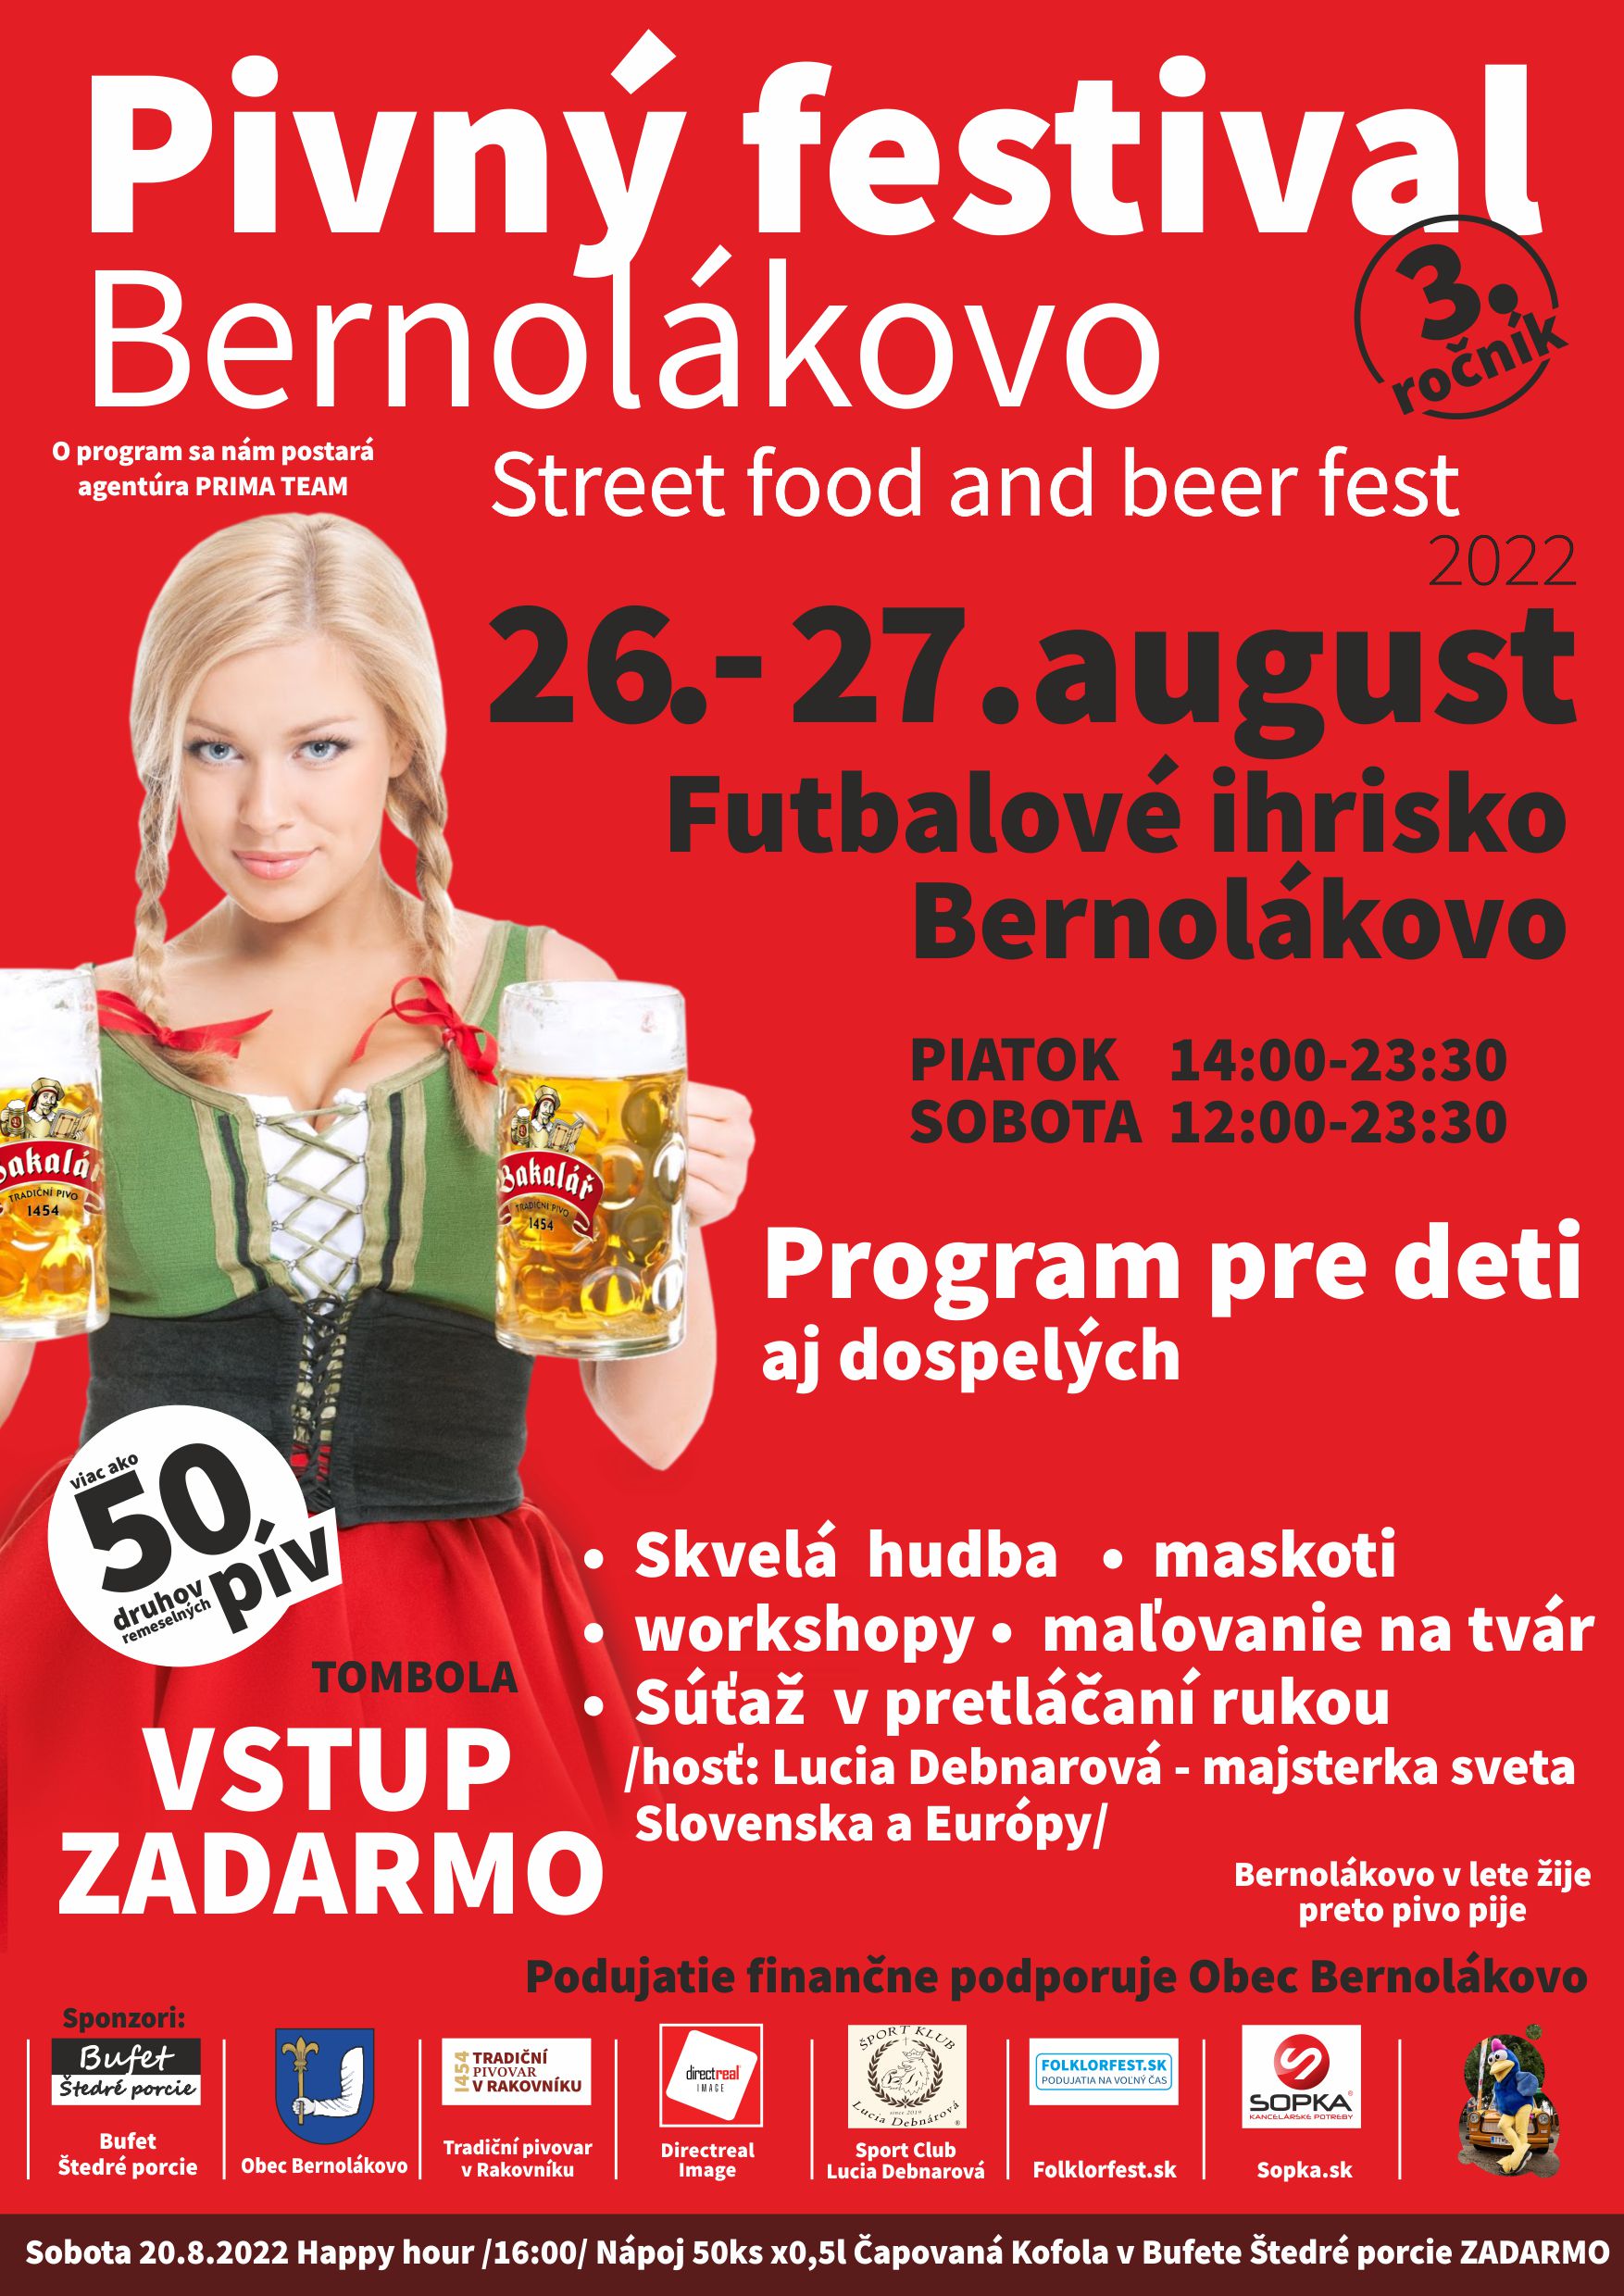 Bernolkovsky pivn festival 2022 - 3.ronk 